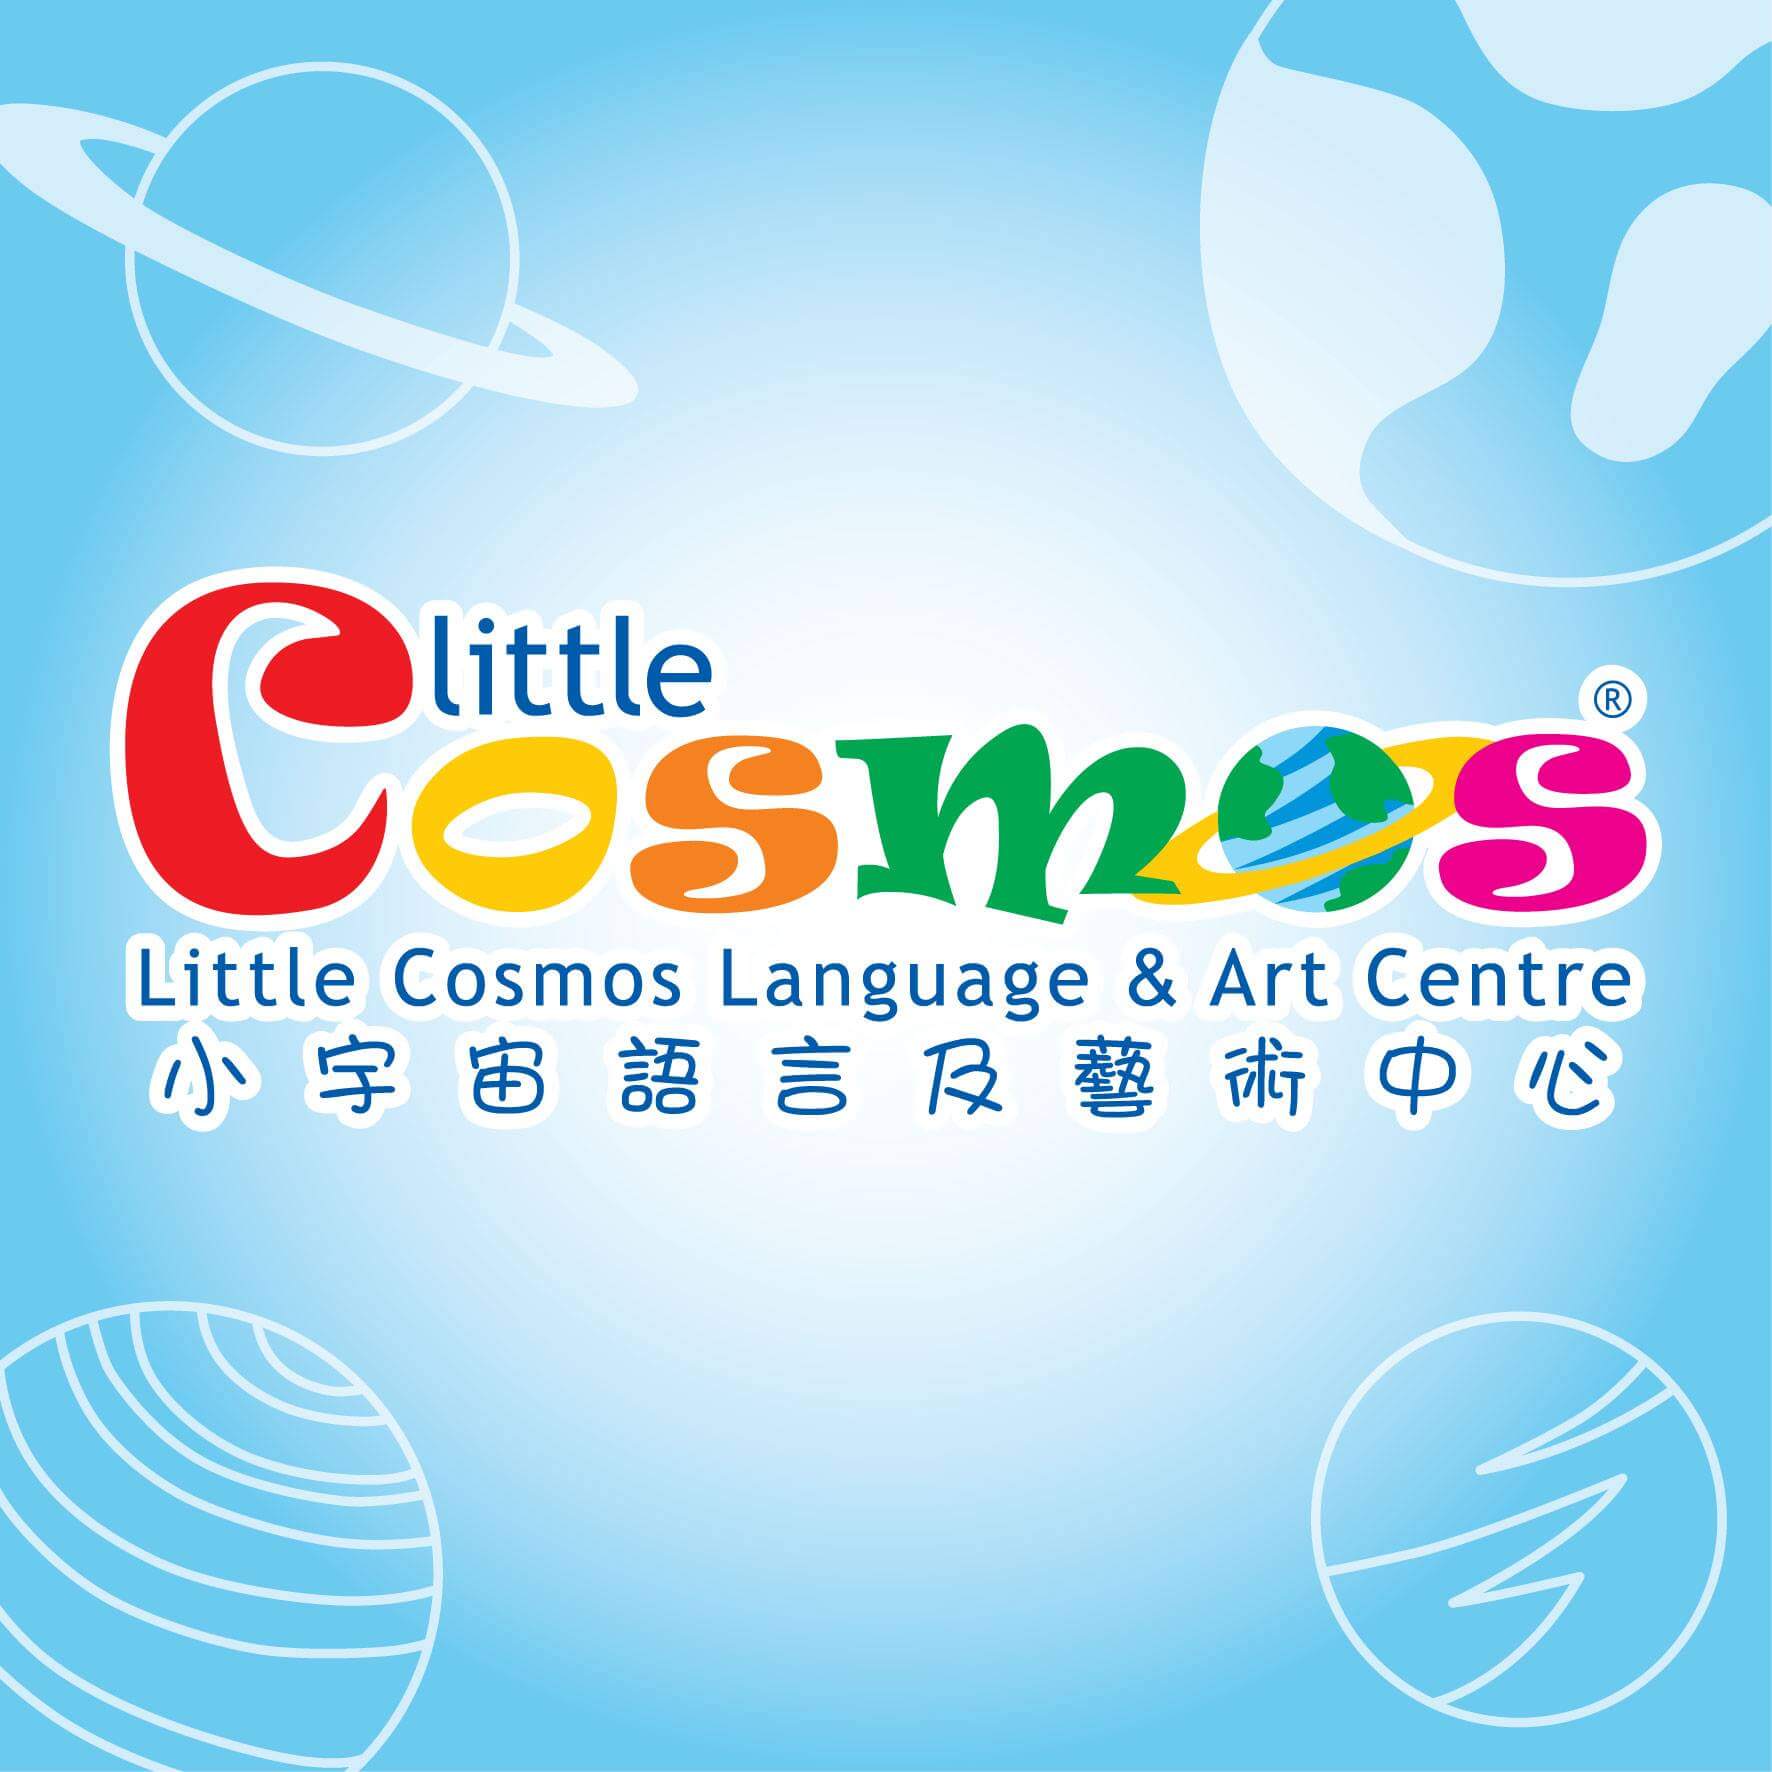 小宇宙語言及藝術中心 Little Cosmos的特許經營香港區加盟店項目1